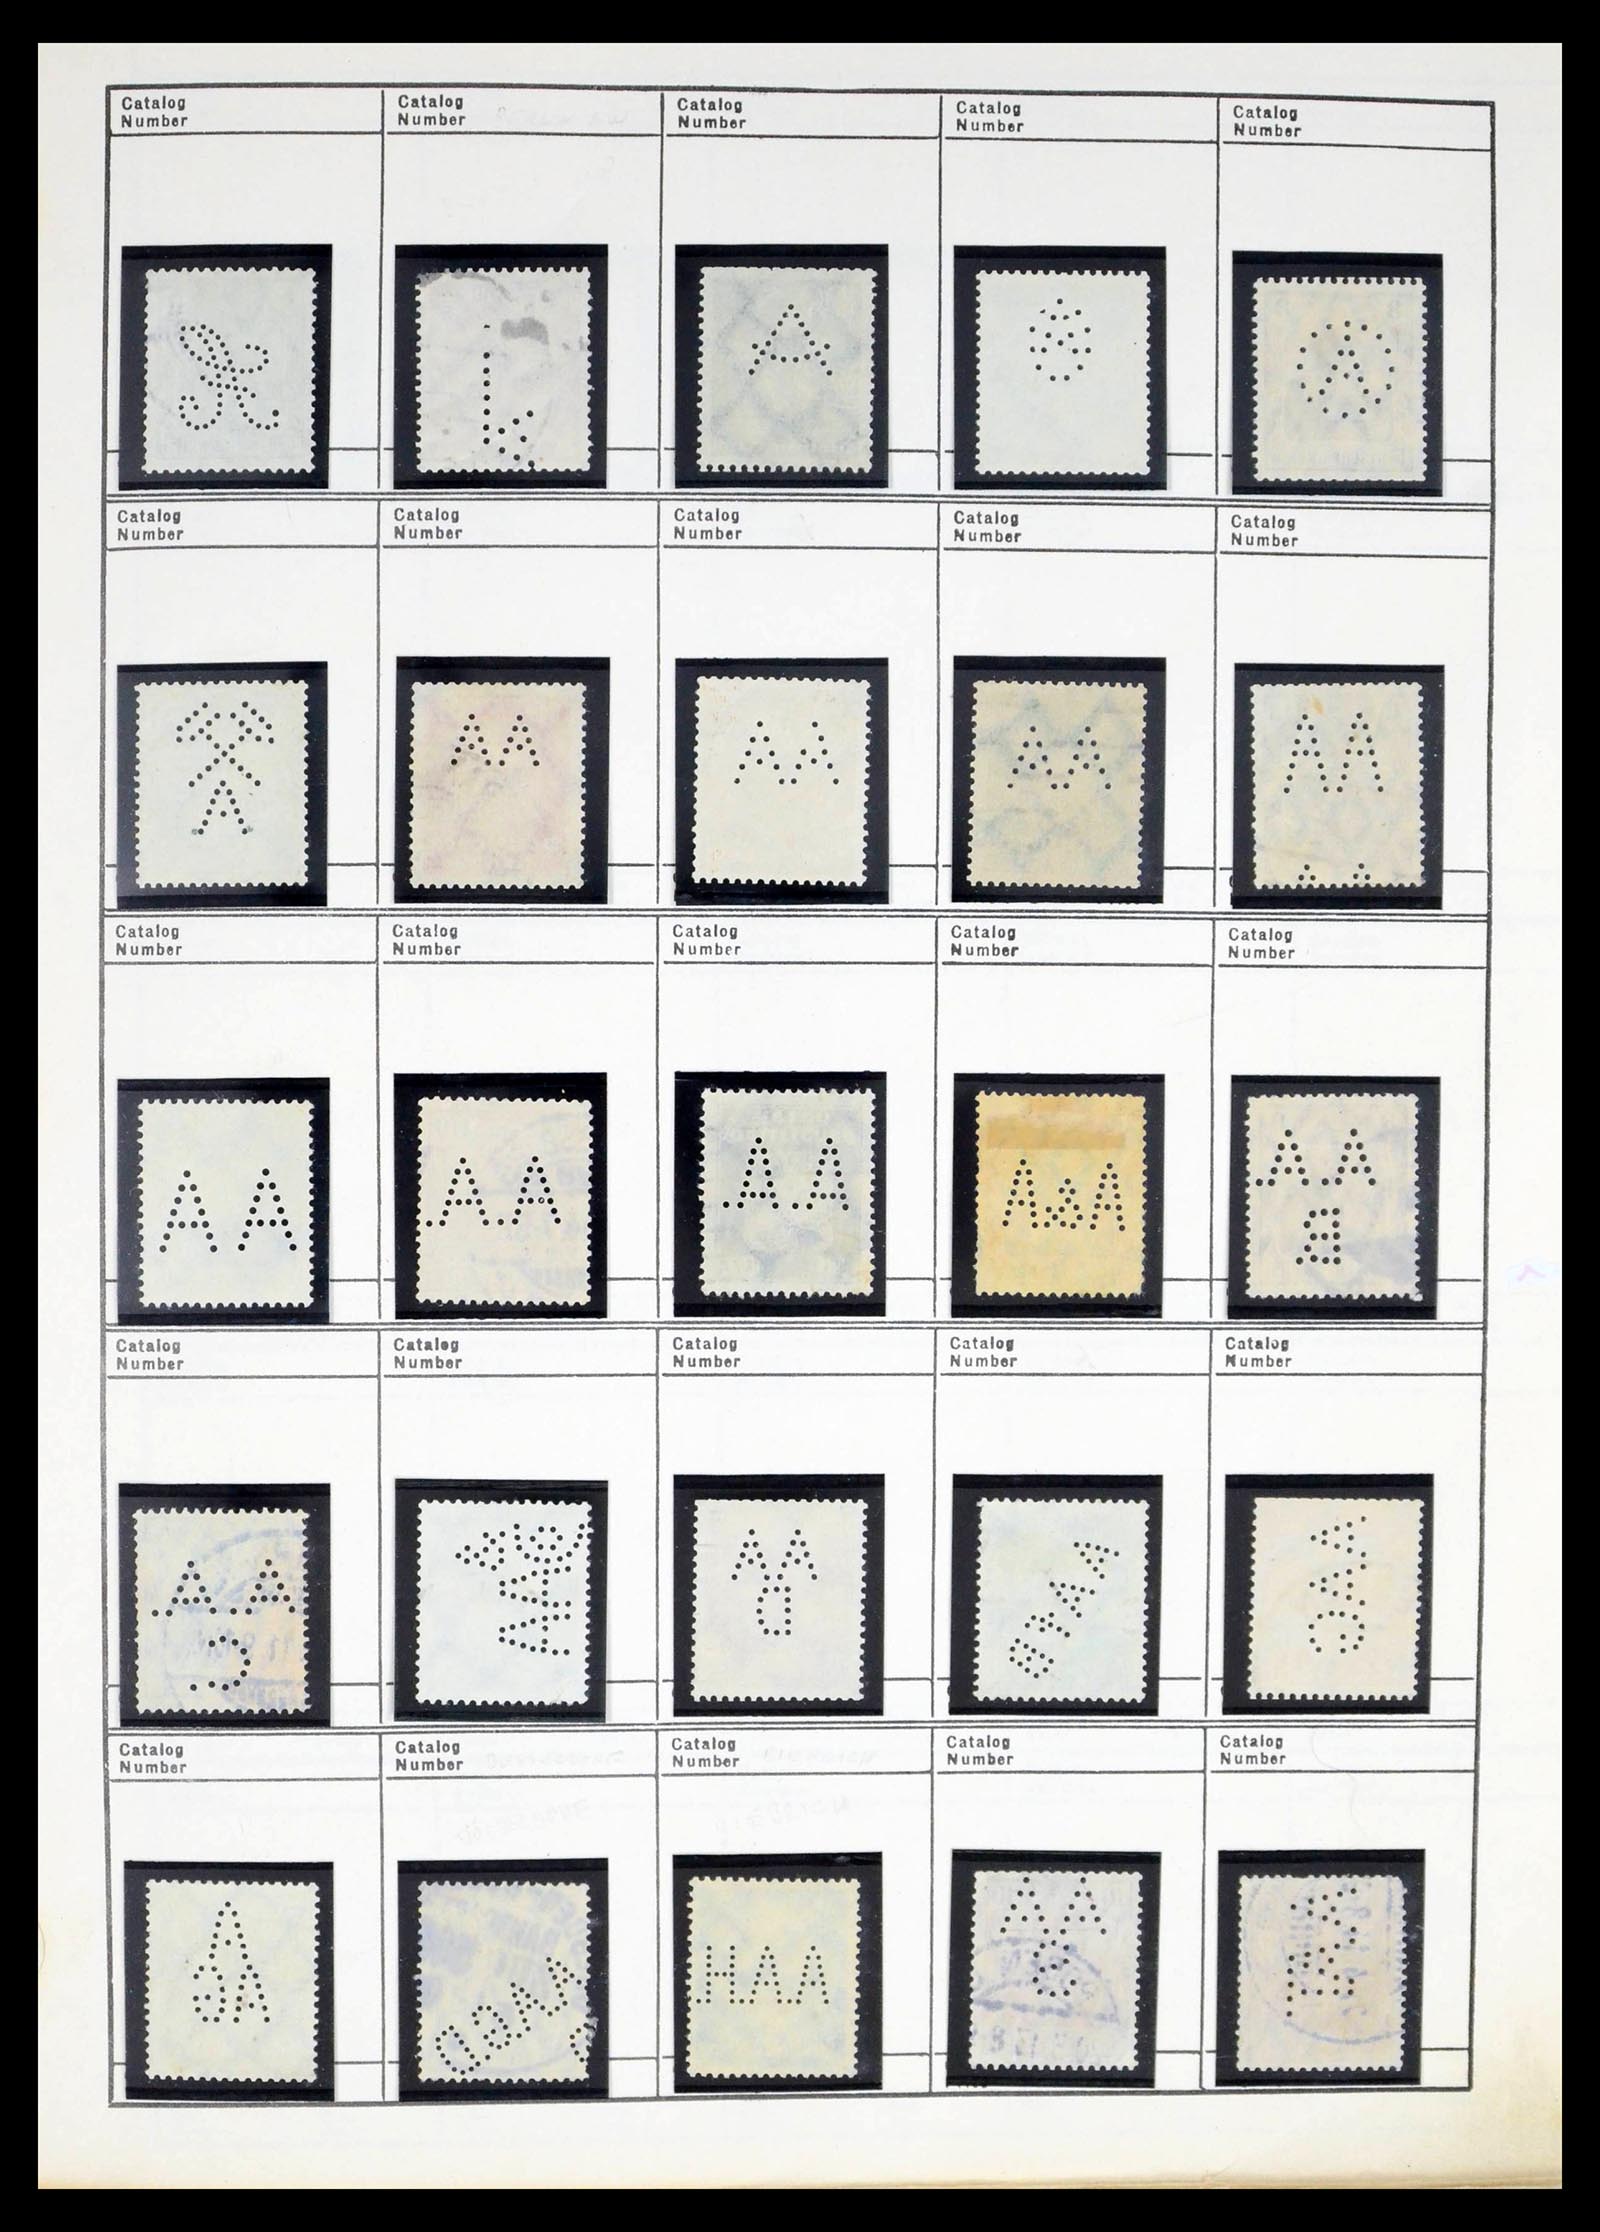 39480 0004 - Stamp collection 39480 German Reich perfins 1880-1955.